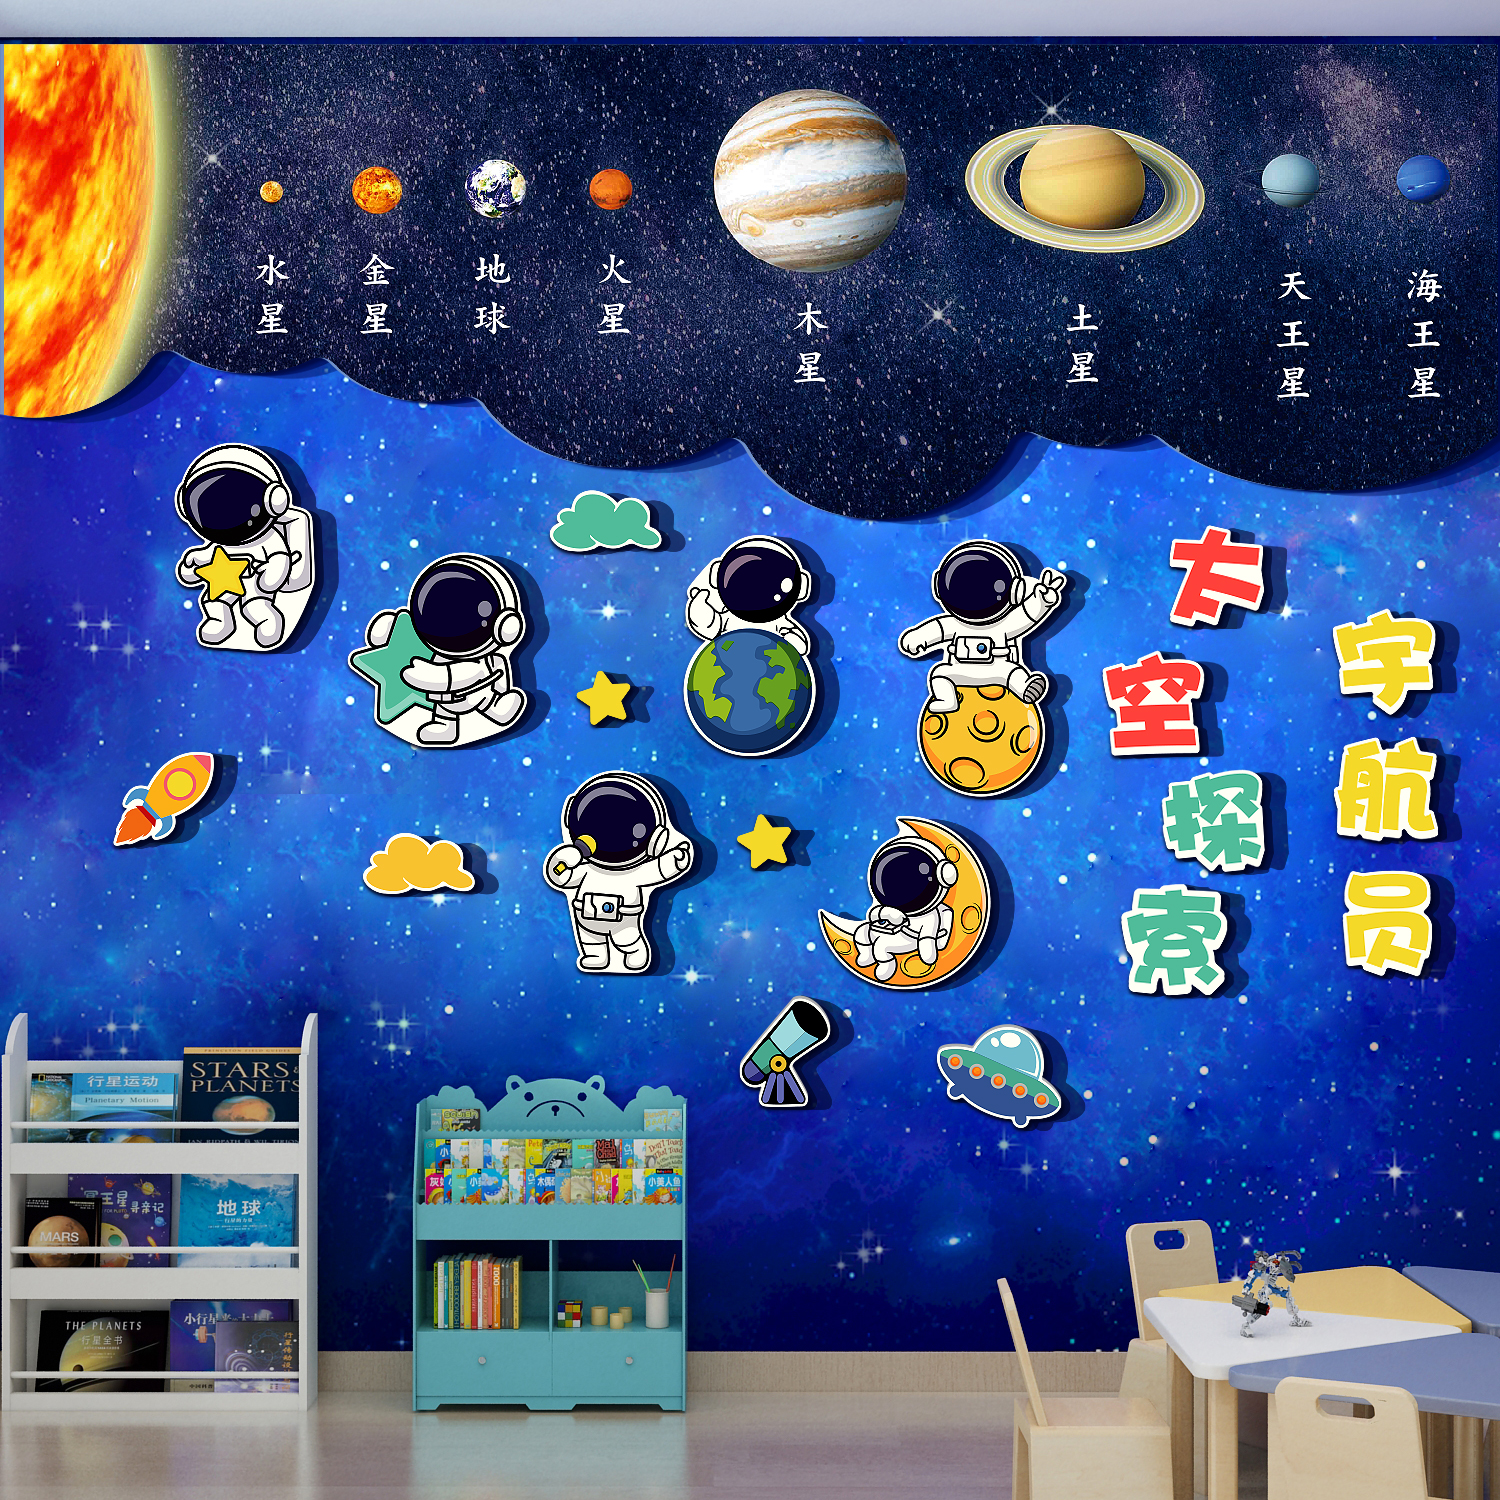 宇宙航员太空星球主题科学技区幼儿园墙面装饰文化绘本馆环创成品